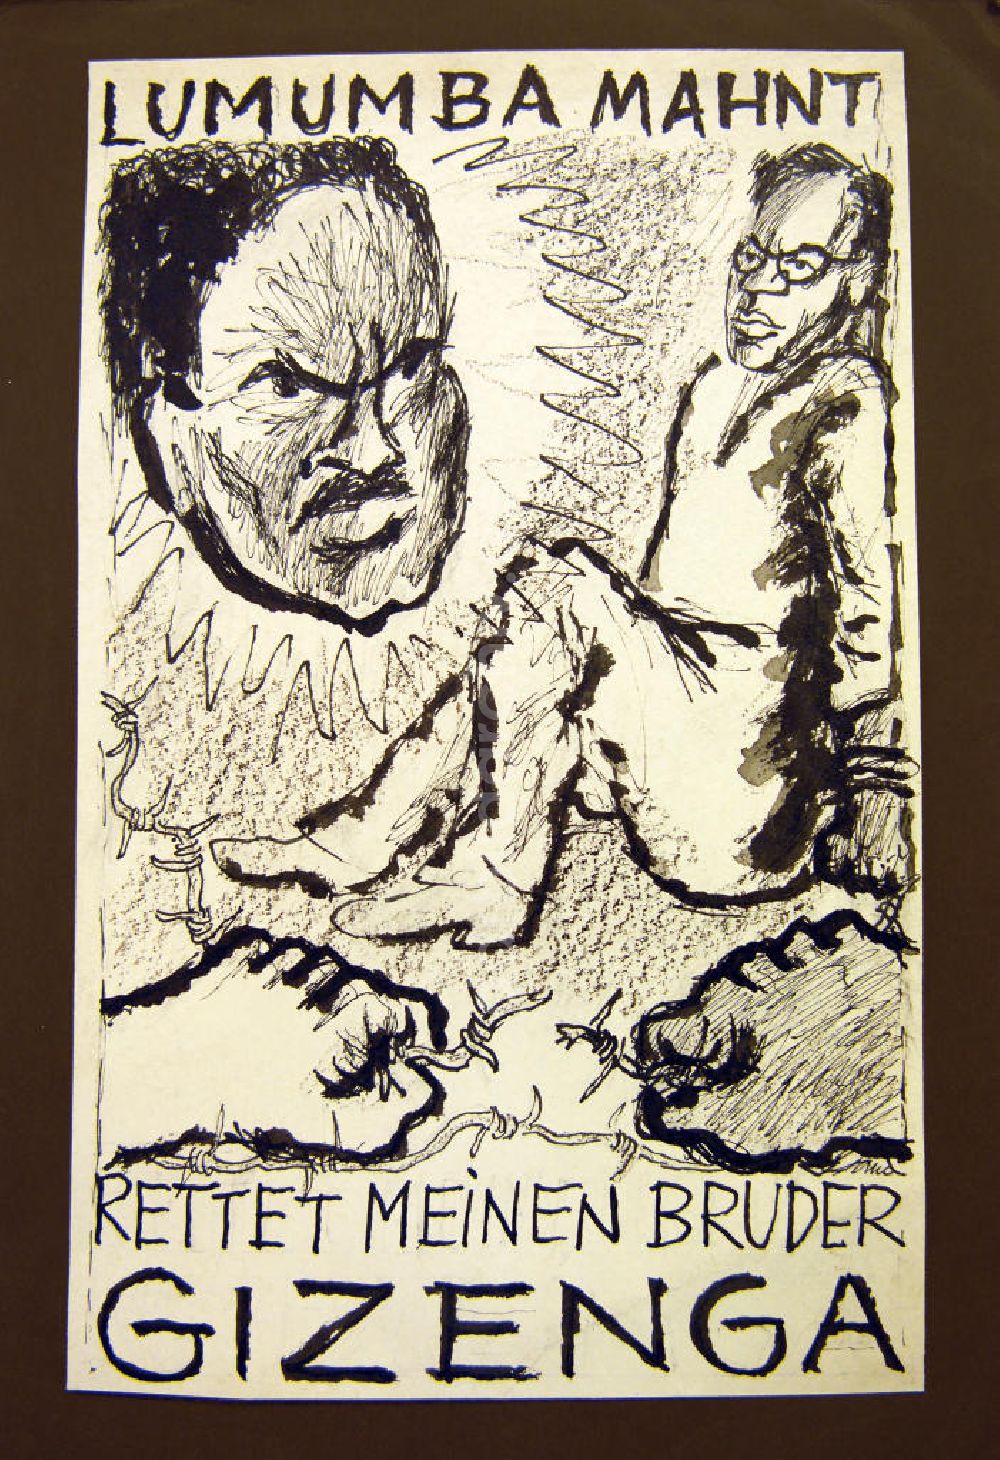 DDR-Fotoarchiv: Berlin - Zeichnung von Herbert Sandberg Lumumba mahnt: Rettet meinen Bruder Gizenga